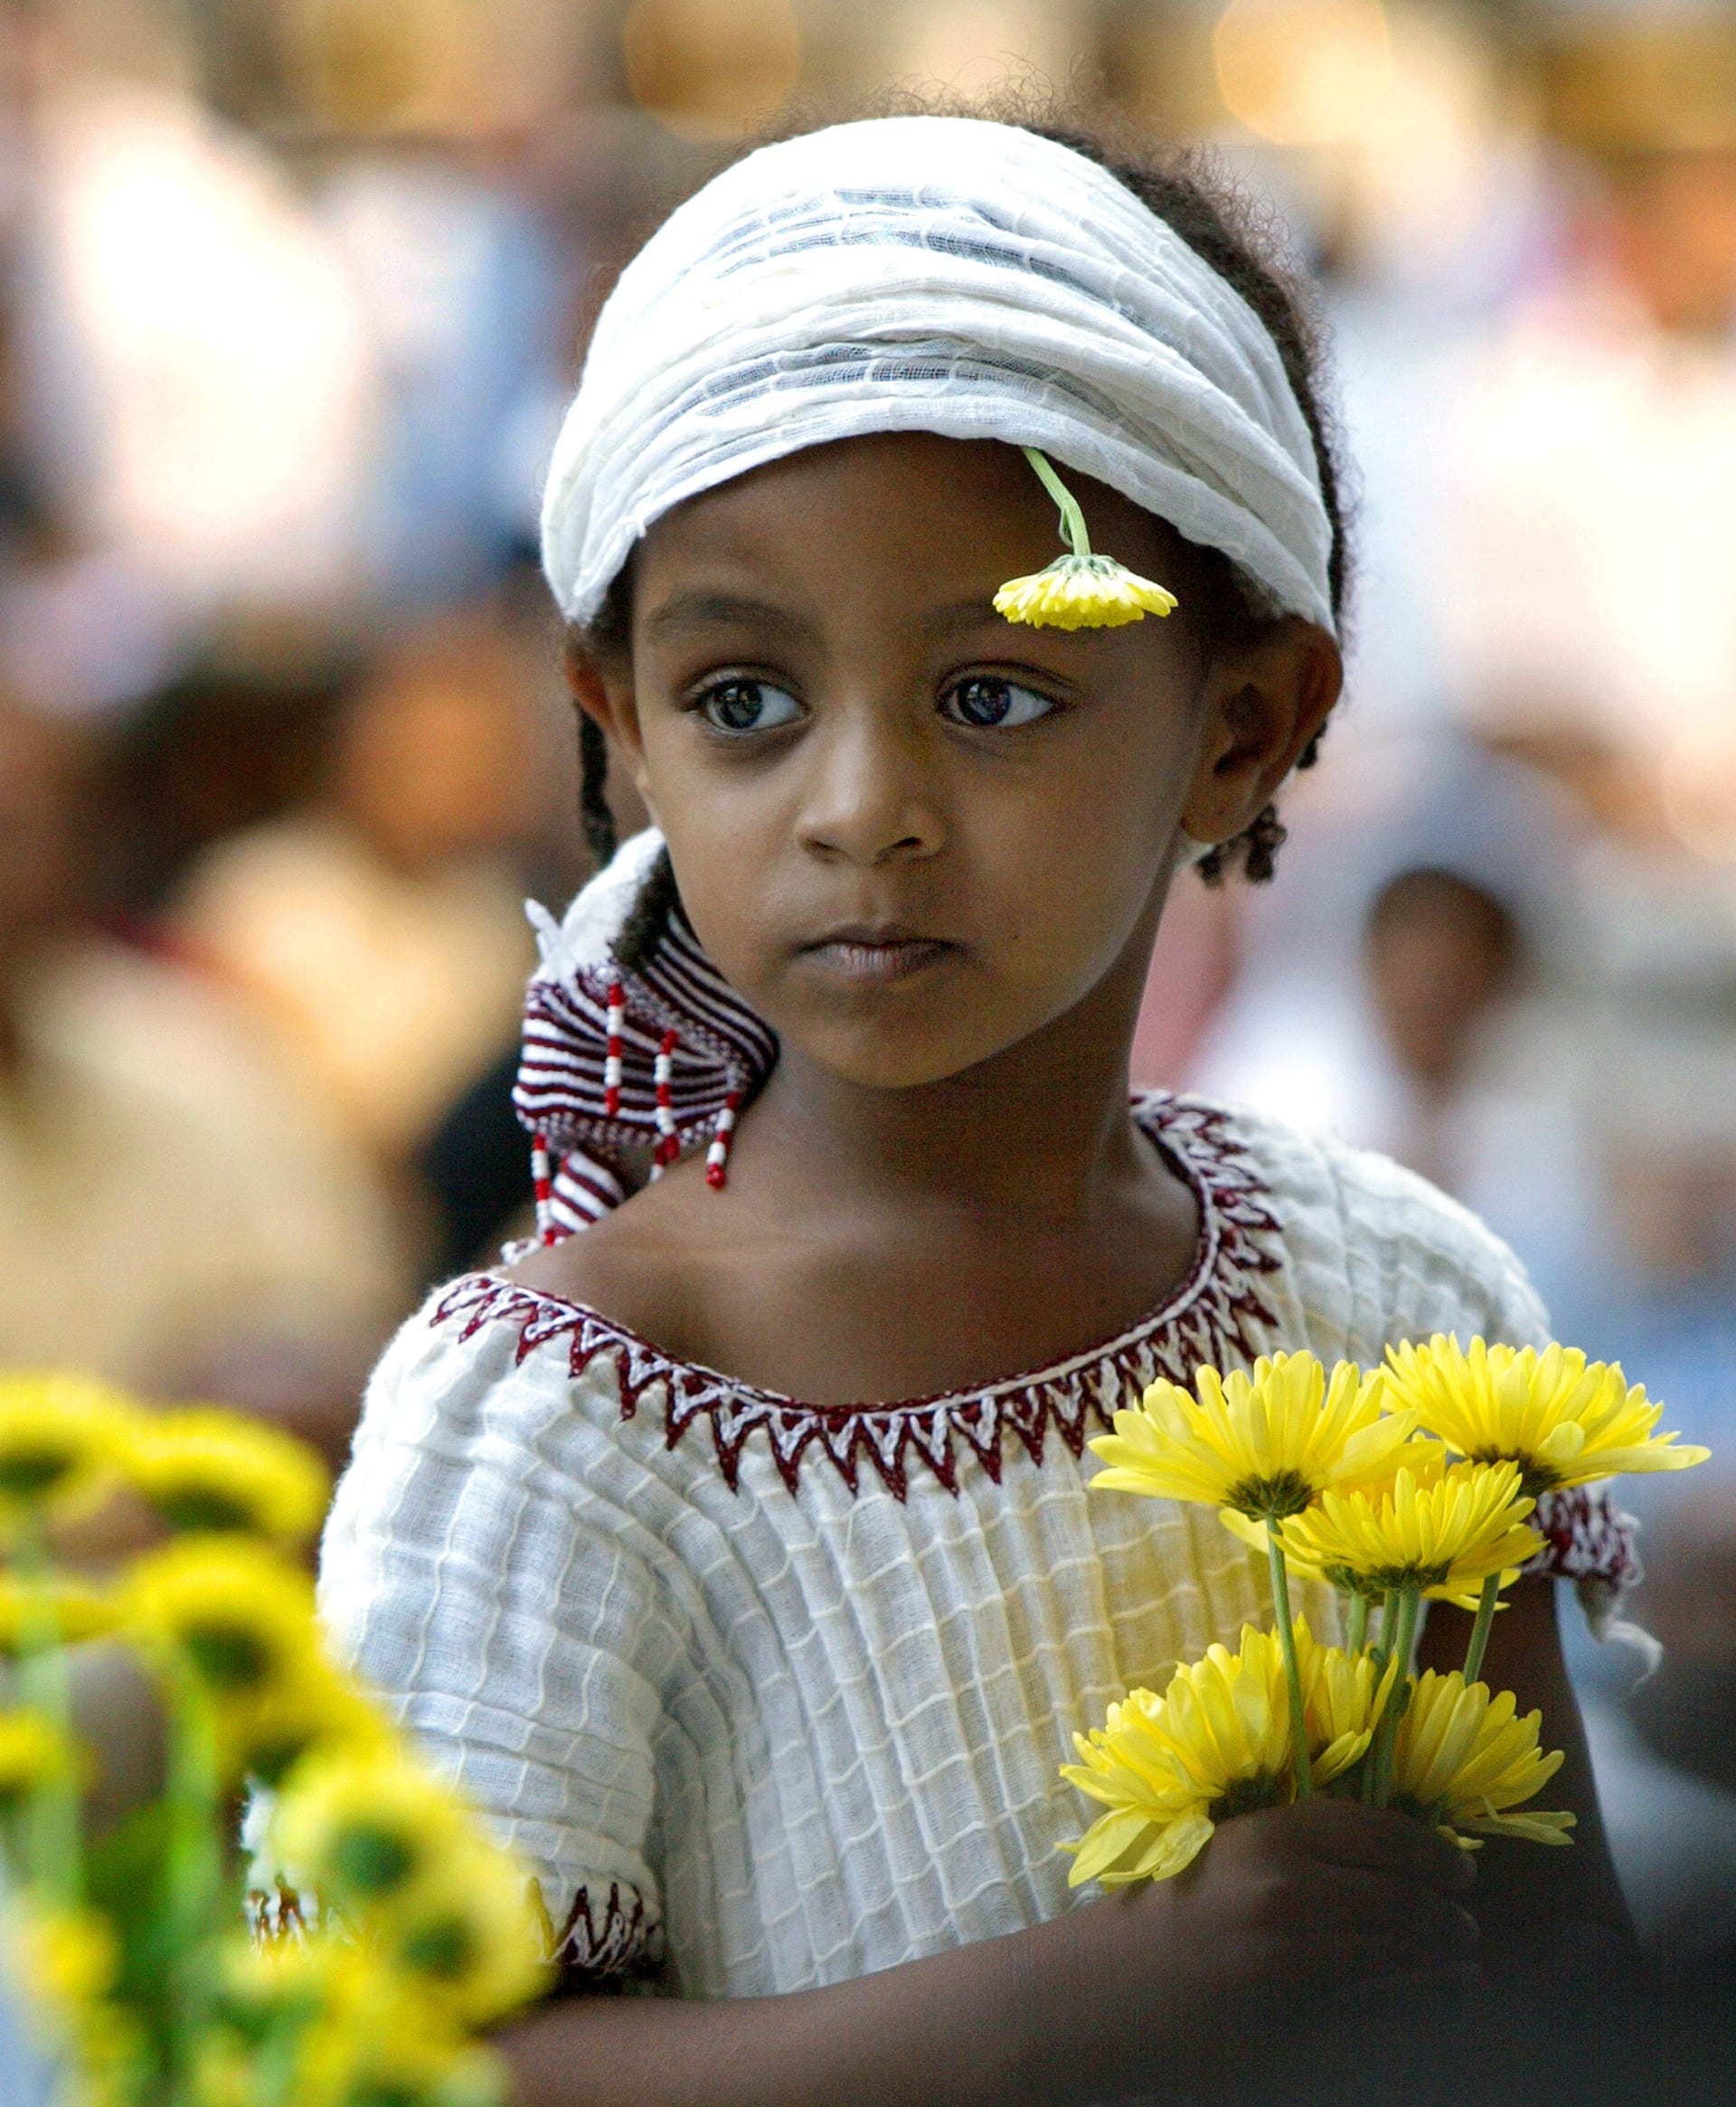  إثيوبيا تحتفل بعامها الجديد 2012.. ما السبب؟